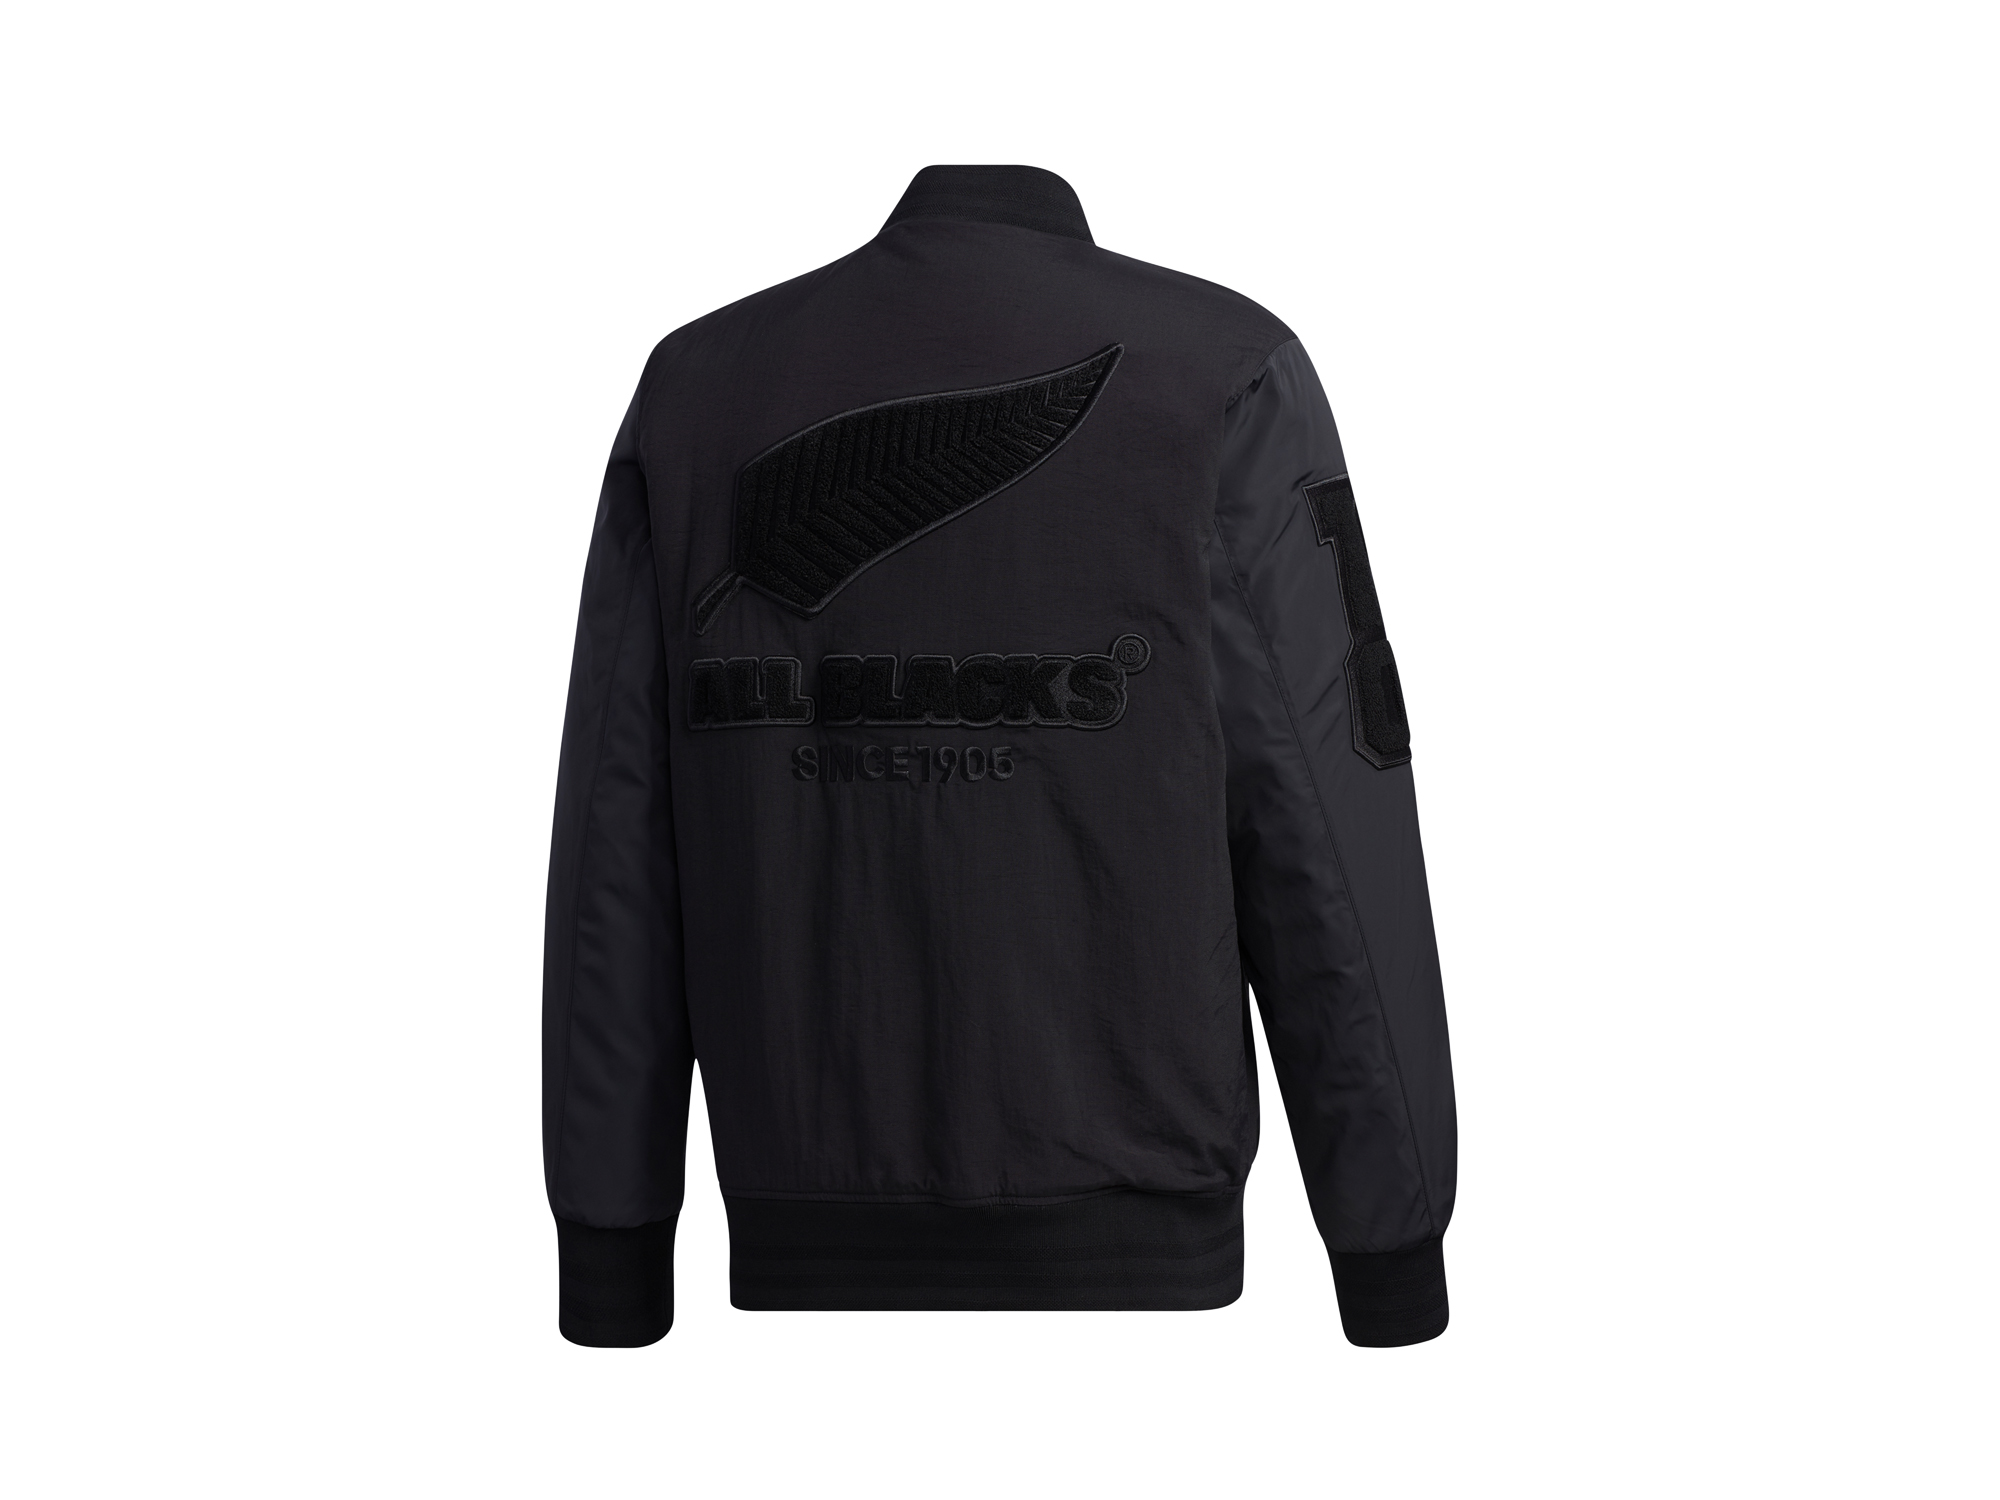 Adidas All Blacks Jacket